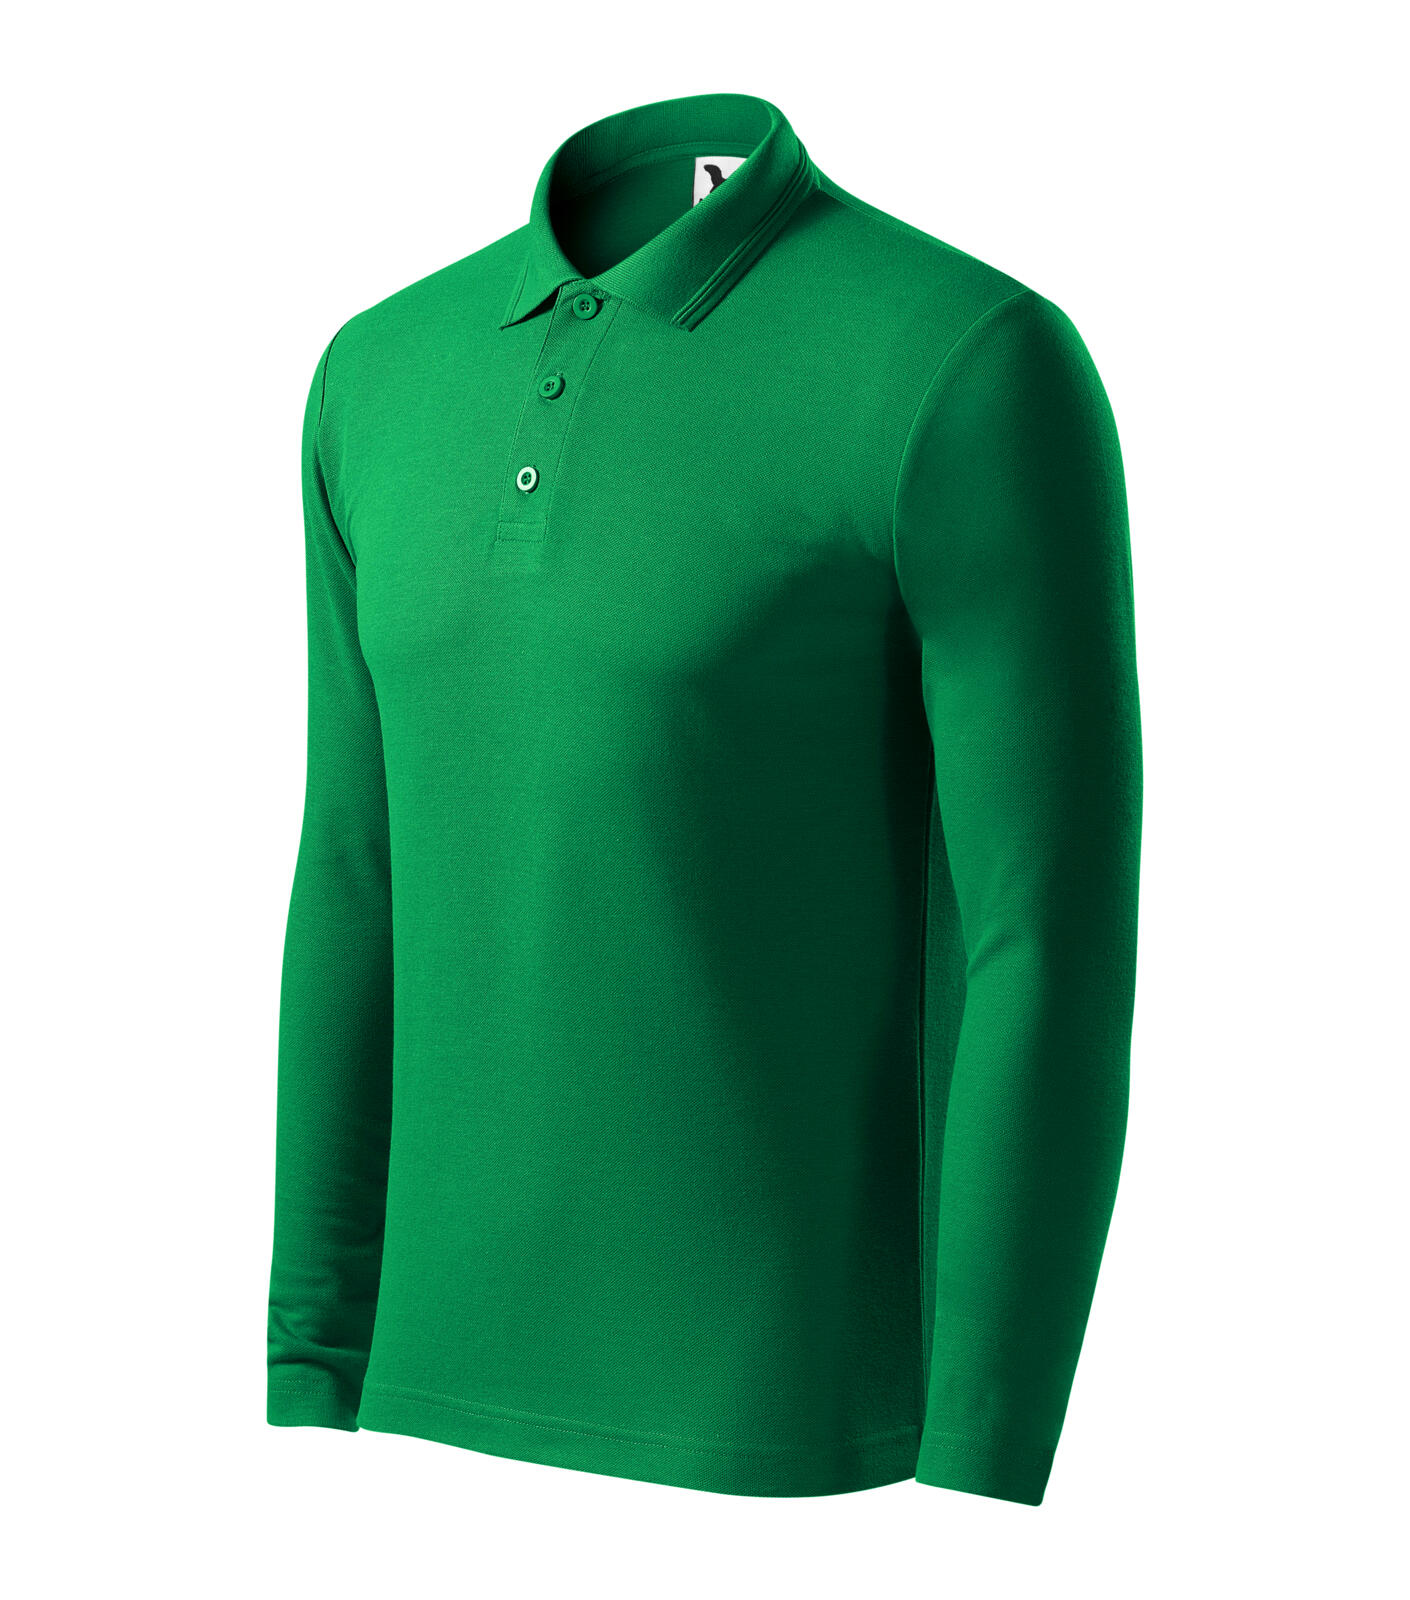 Pique Polo LS Polokošile pánská Barva: středně zelená, Velikost: XL